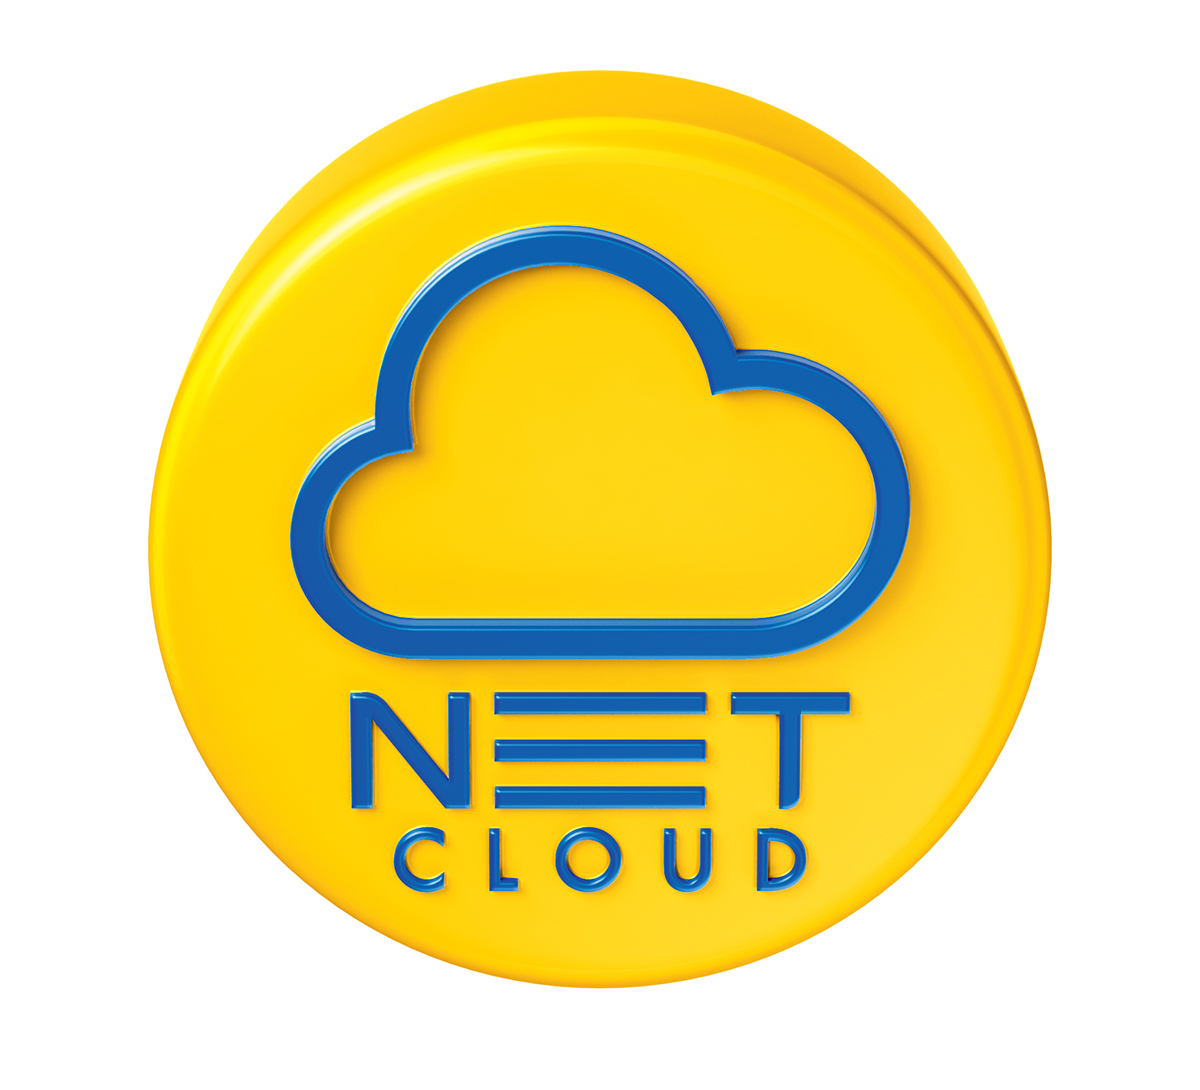 NET Cloud